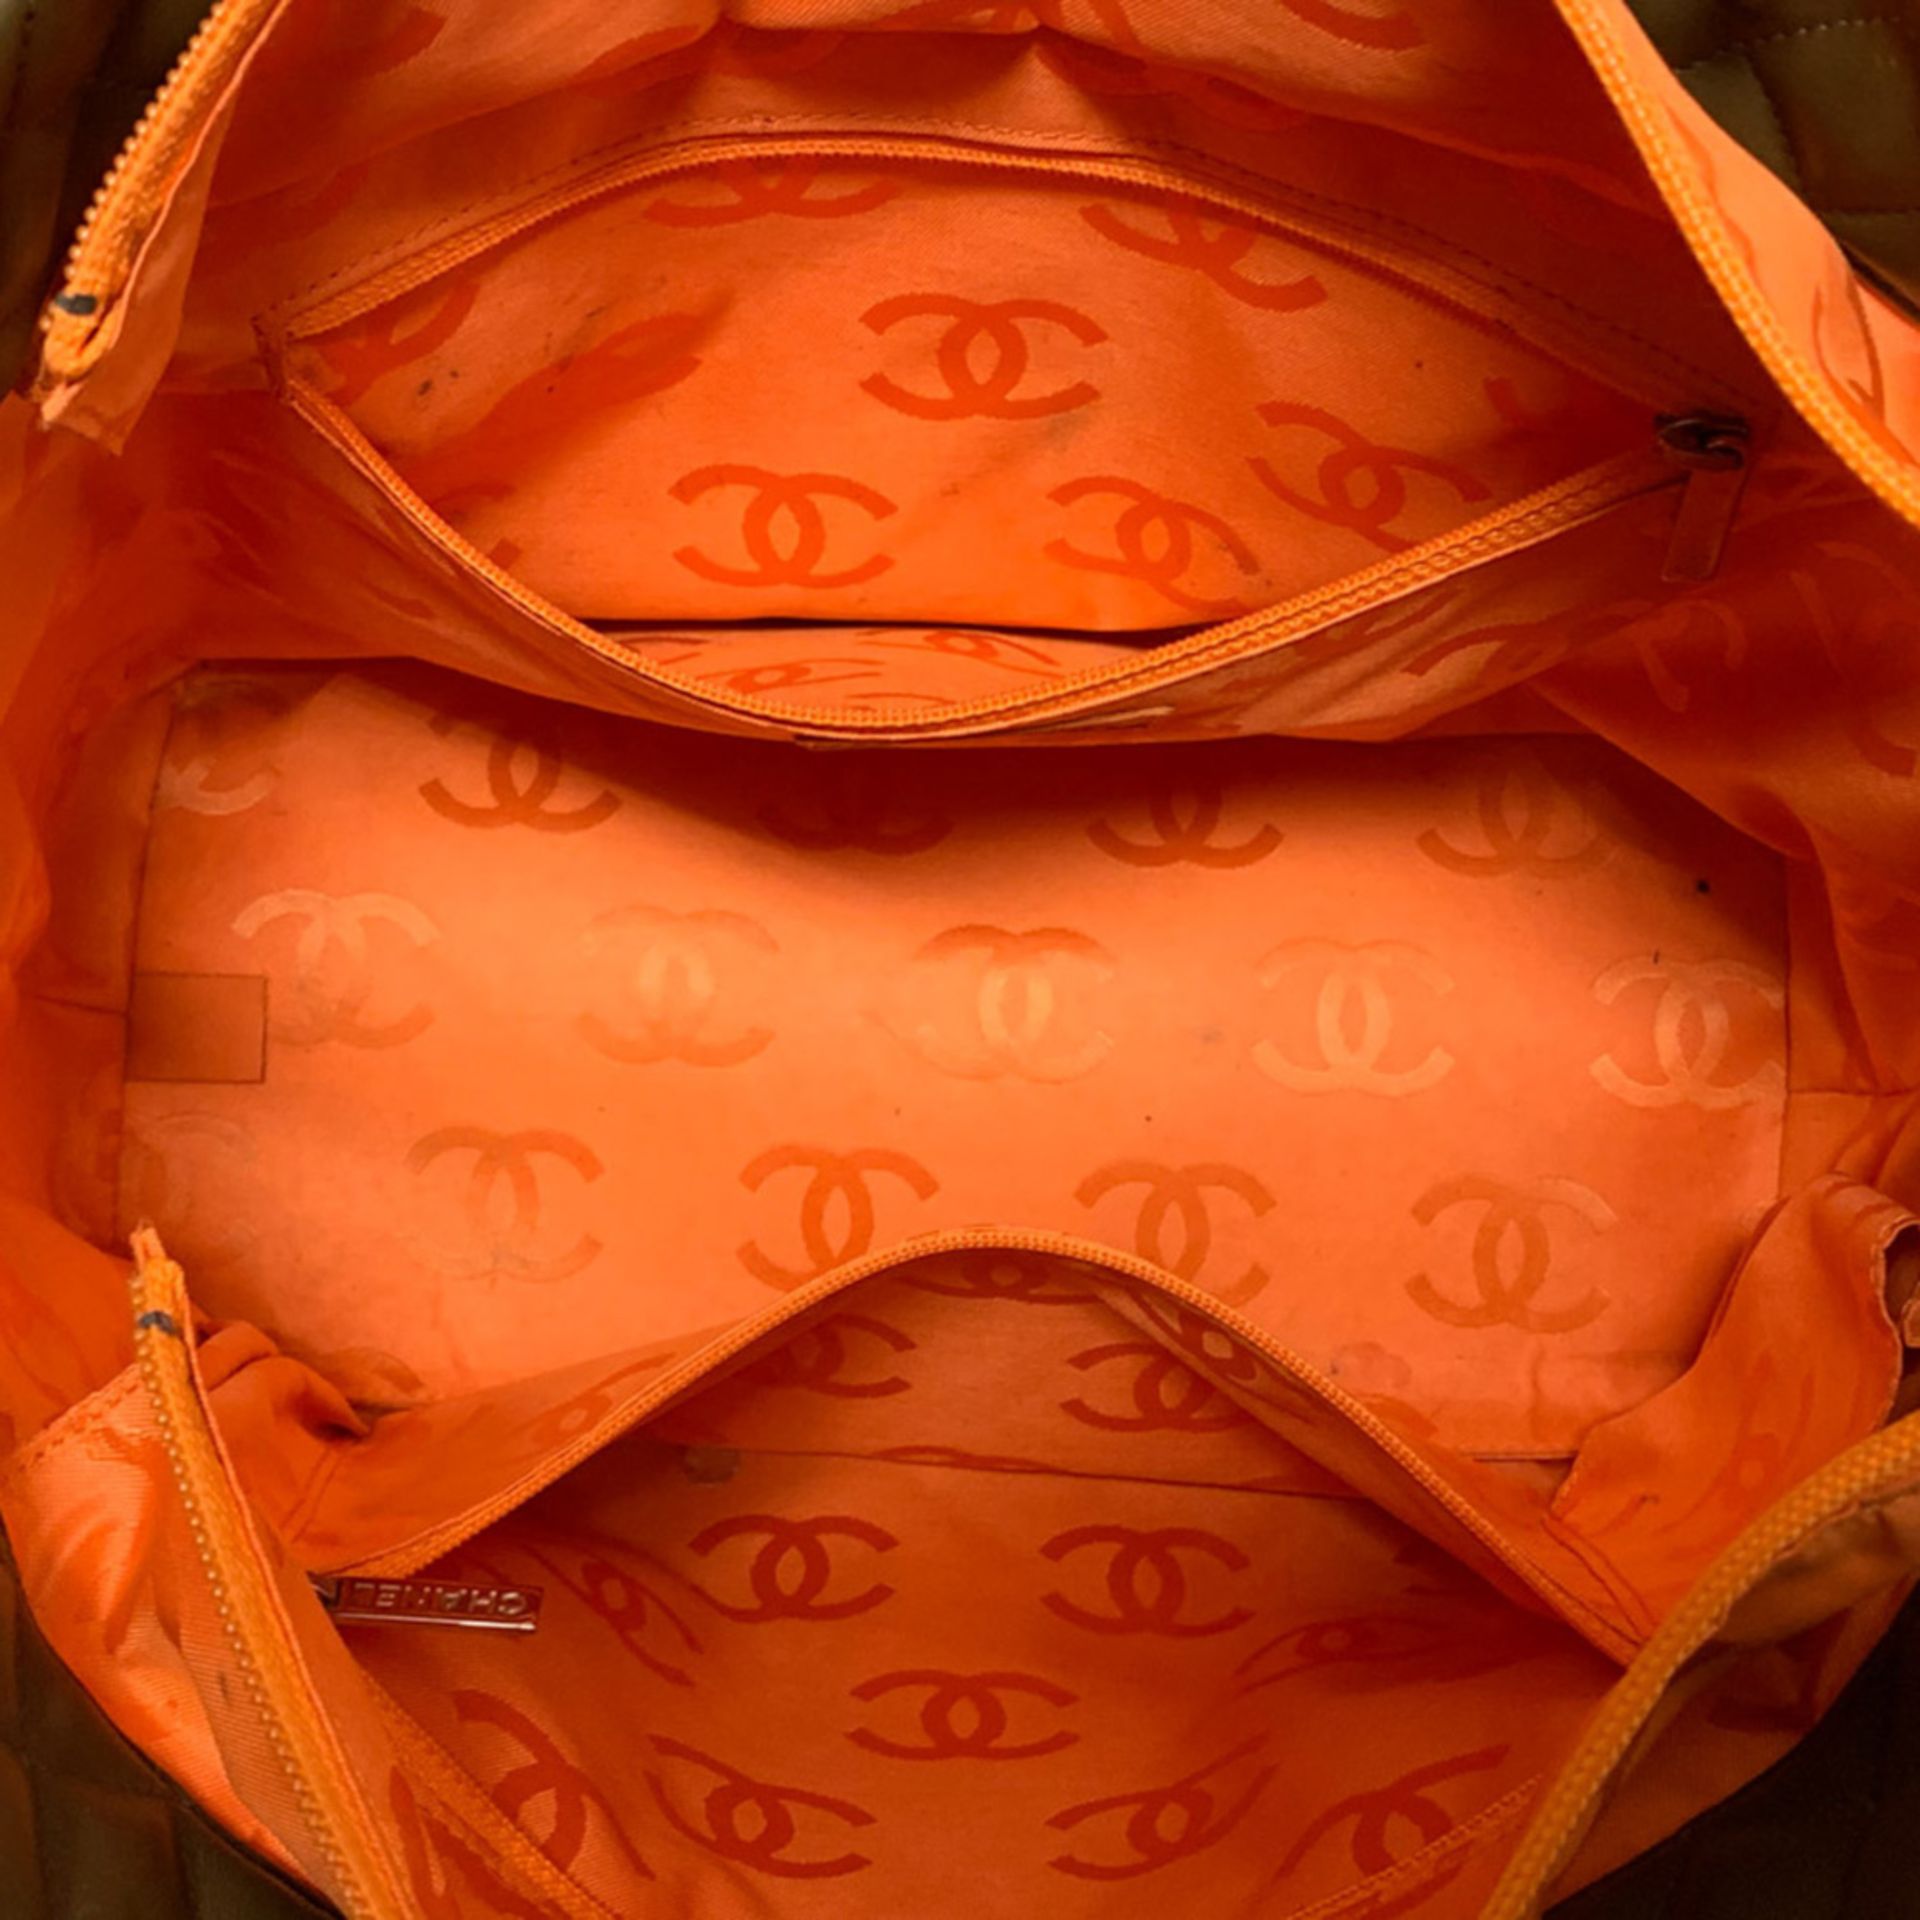 Chanel collezione Cambon Large Python CC, shoulder bag 2000s 30x25x15 cm. - Image 6 of 6